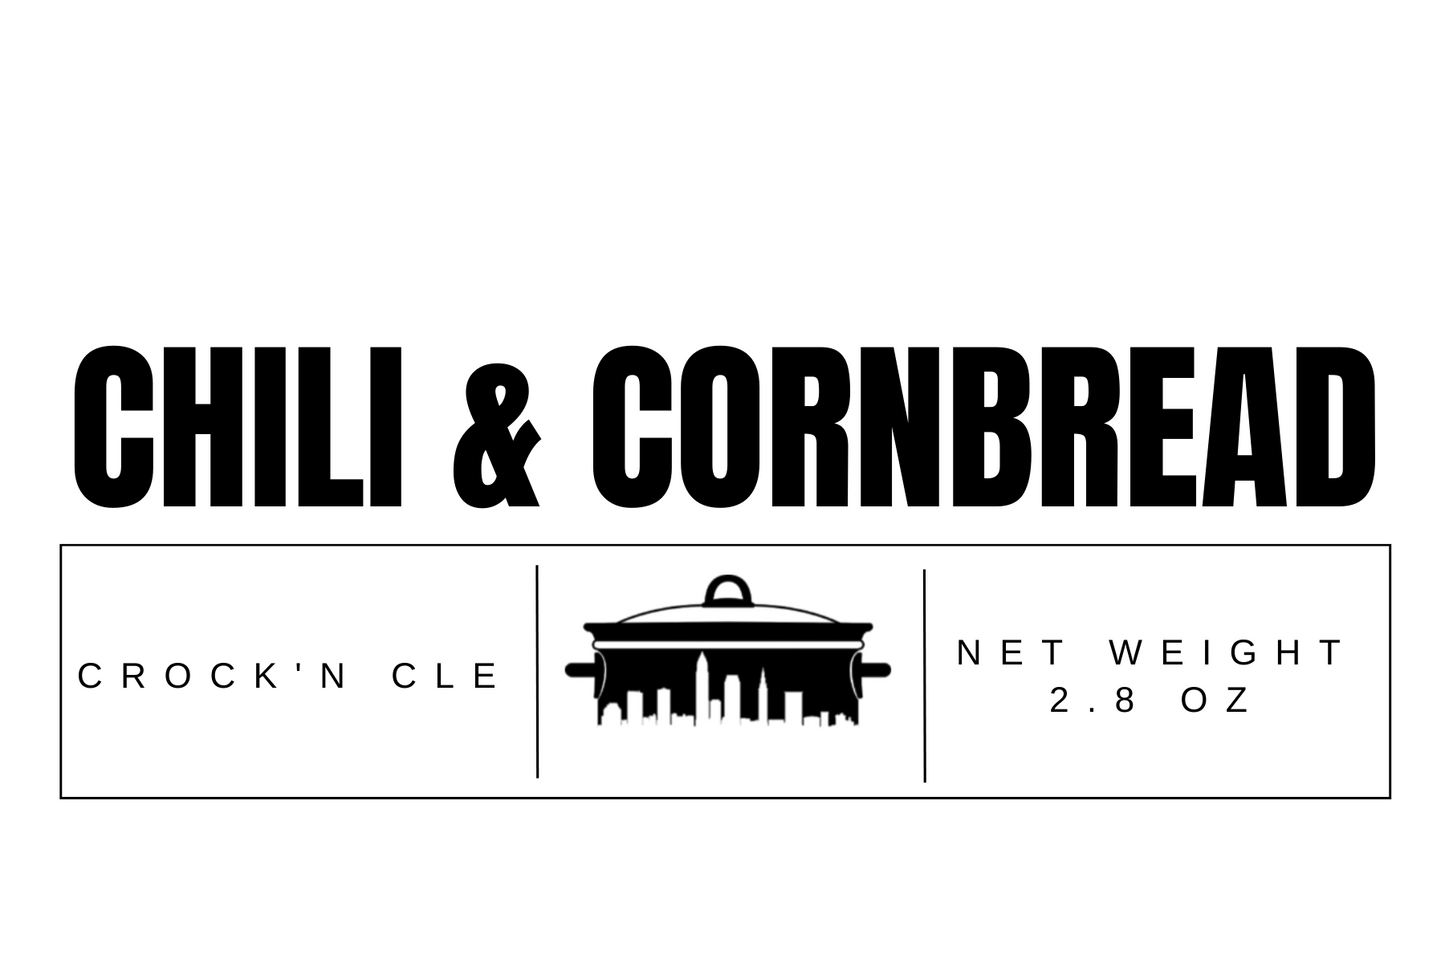 Chili & Cornbread